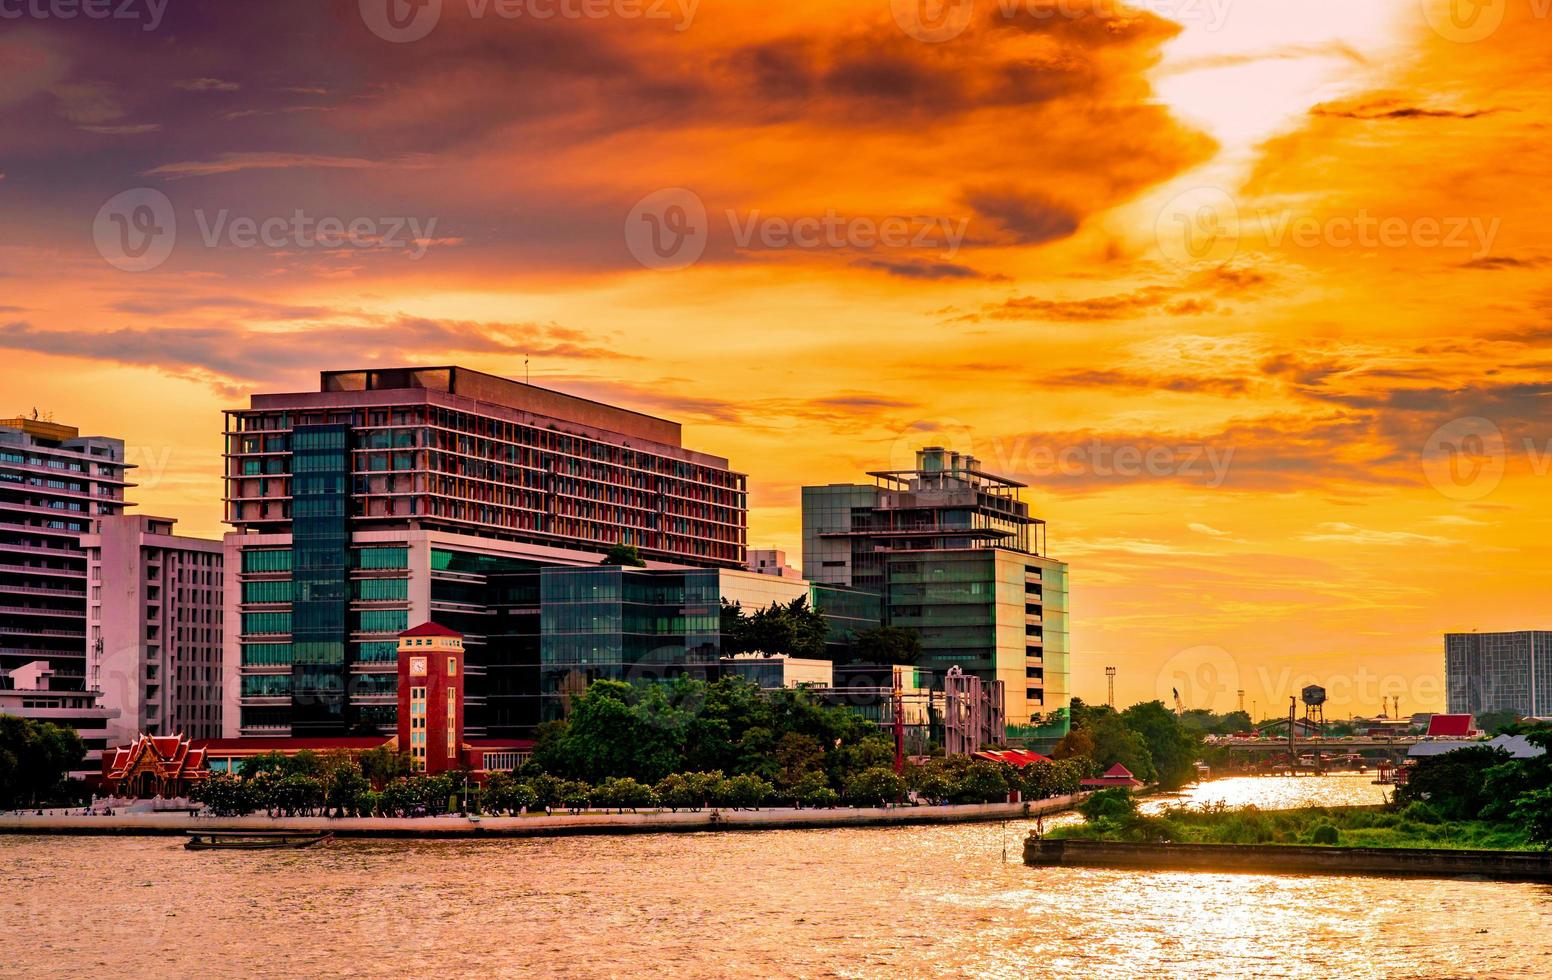 paisagem urbana do edifício moderno perto do rio de manhã ao nascer do sol. prédio de escritórios de arquitetura moderna na tailândia. edifício à beira-rio e cidade com céu laranja e nuvens foto